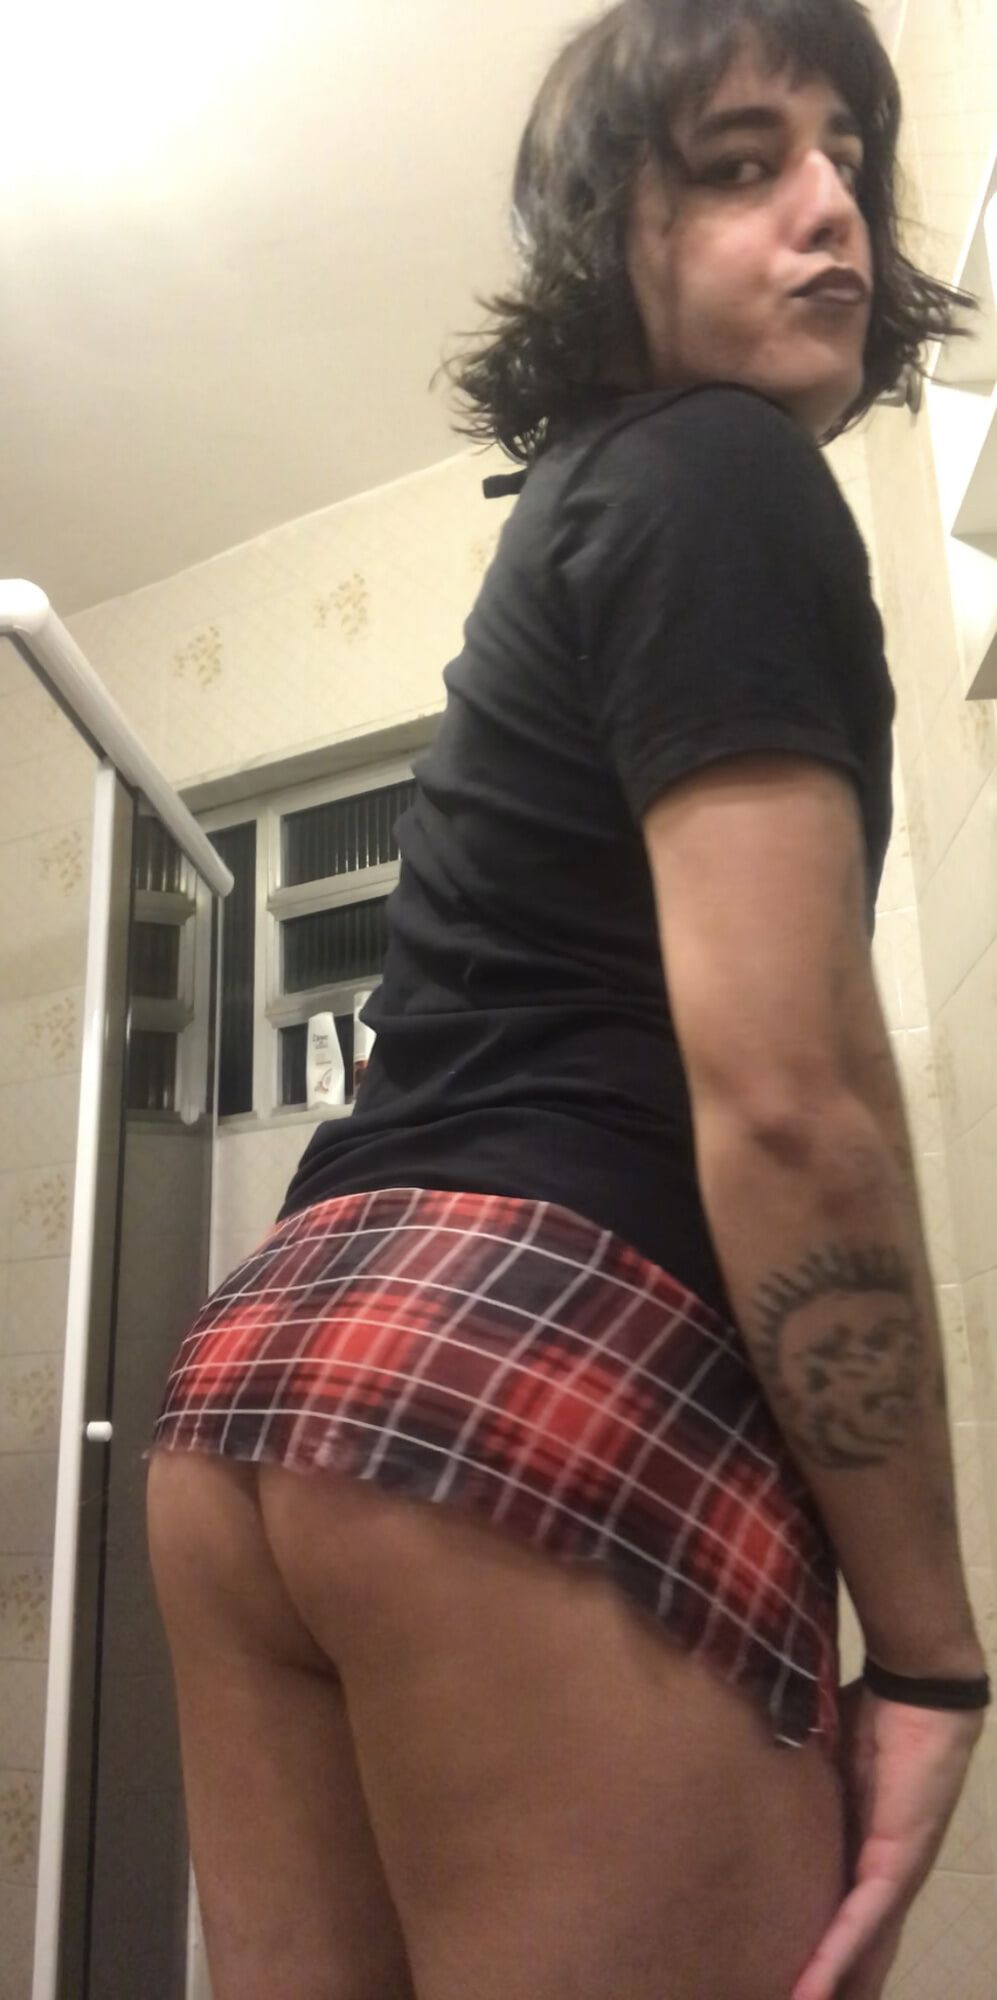 Shemale big ass brazilian punk tgirl latina plaid skirt #3